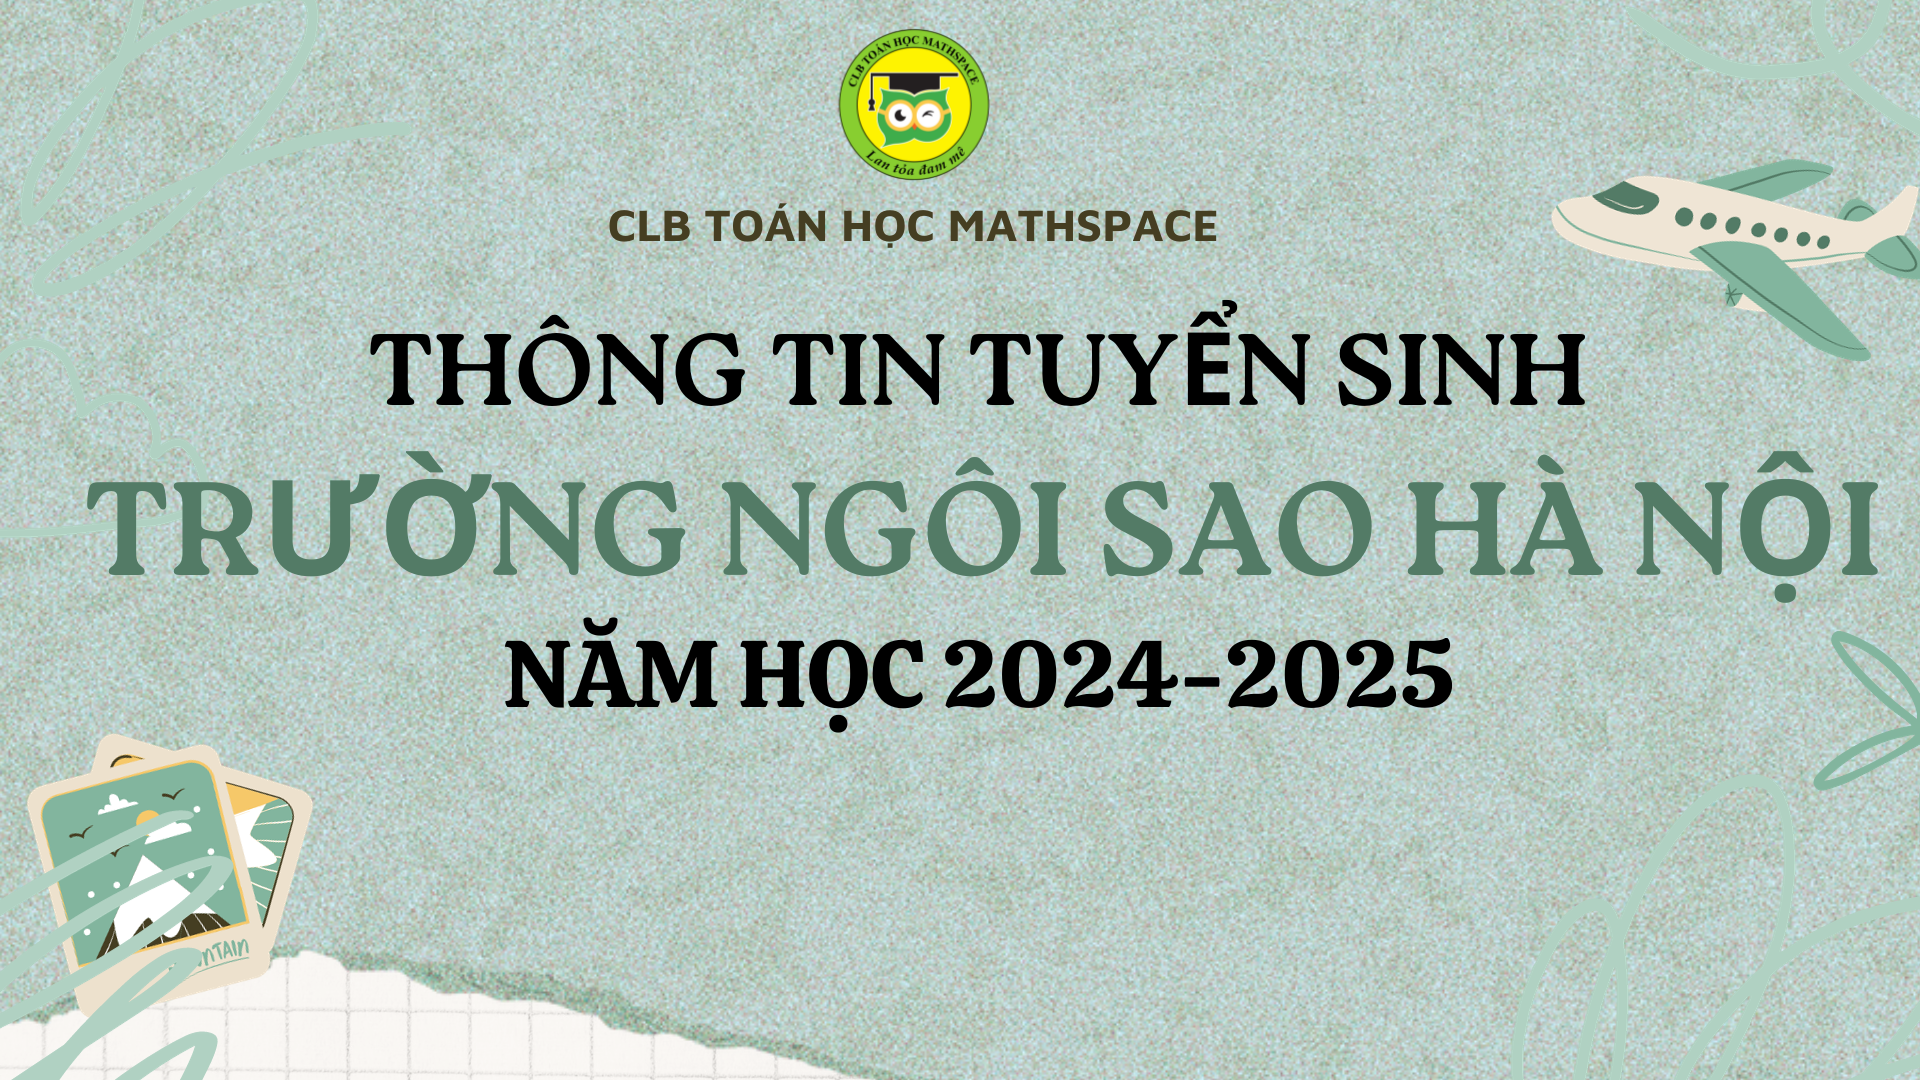 THÔNG TIN TUYỂN SINH VÀO LỚP 6 TRƯỜNG NGÔI SAO HÀ NỘI NĂM HỌC 2024-2025